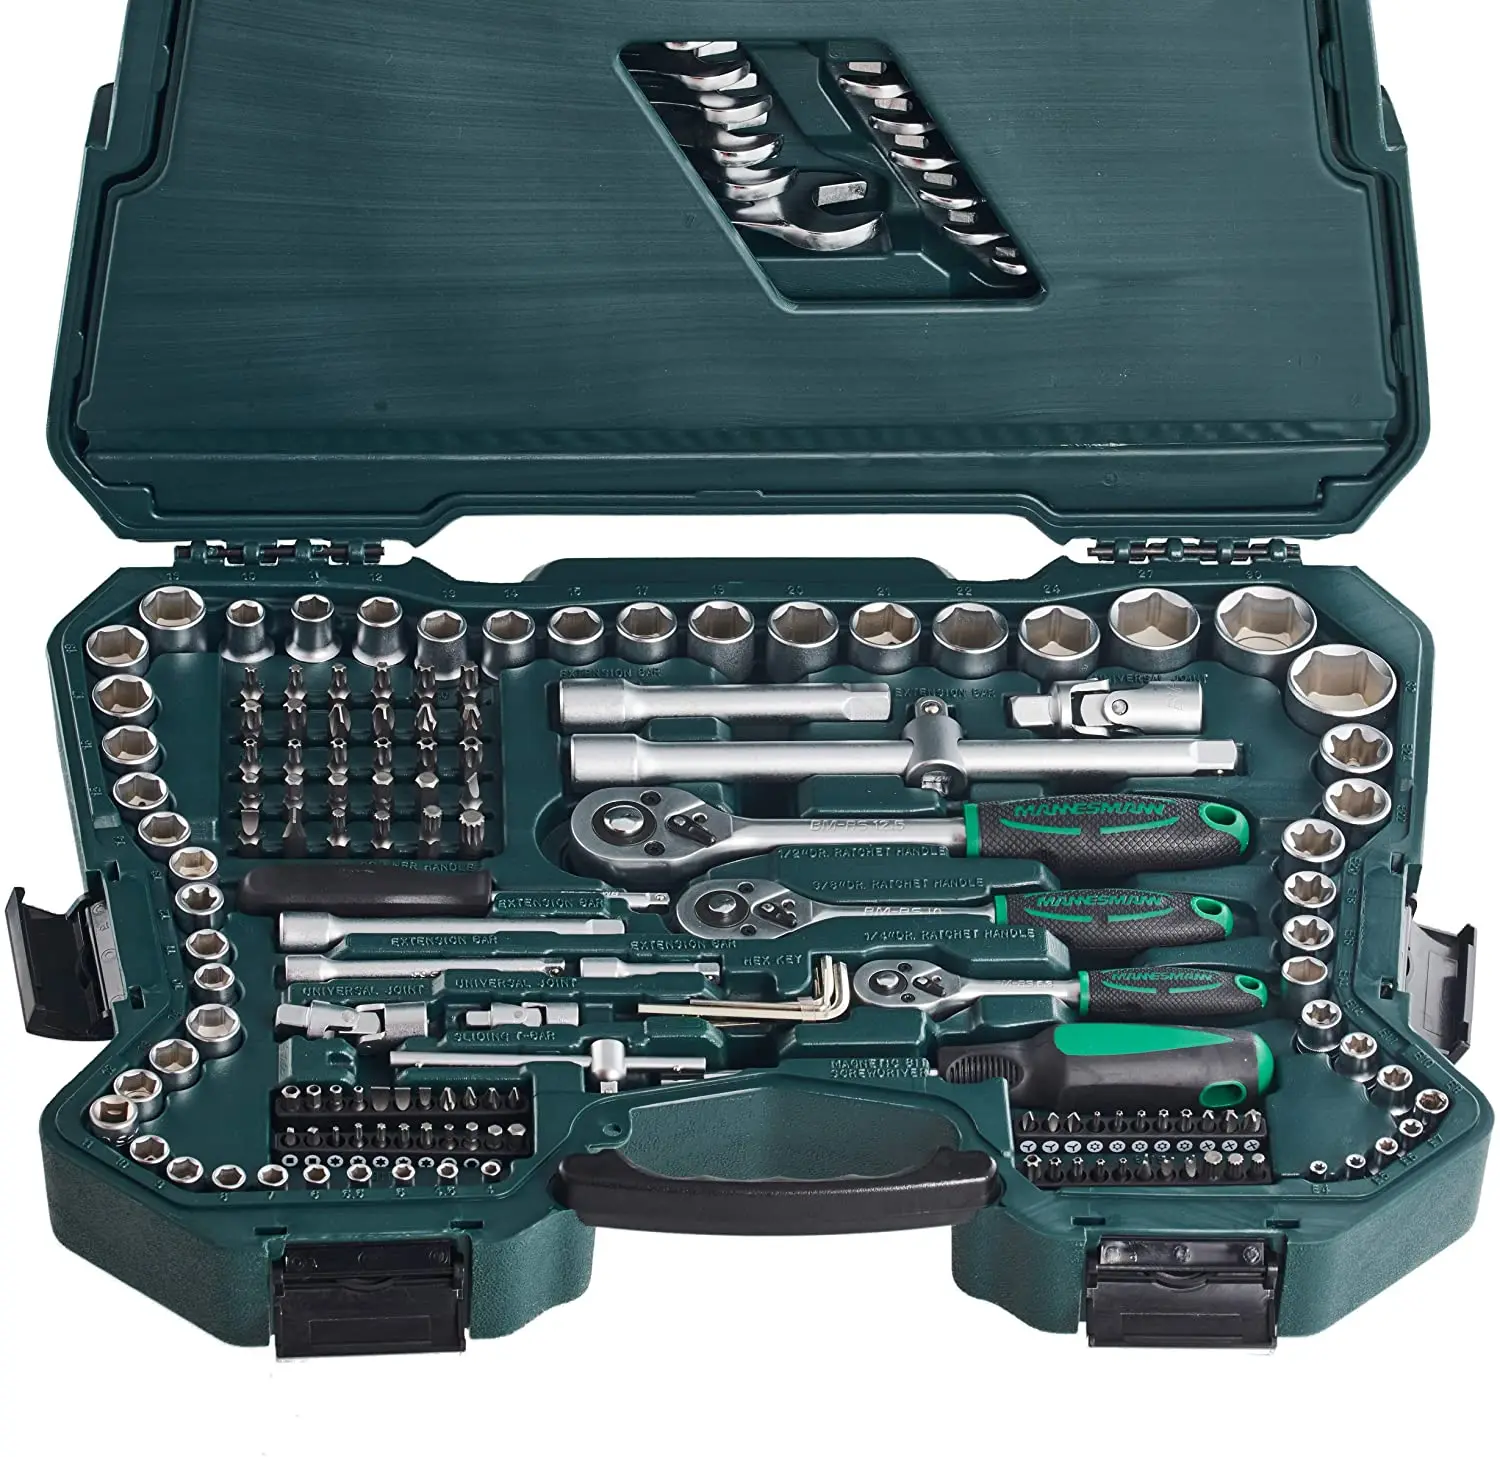 Bespreken Belang weduwnaar Mannesmann M98430-215 Piece Carrying Case - Hand Tool Sets - AliExpress